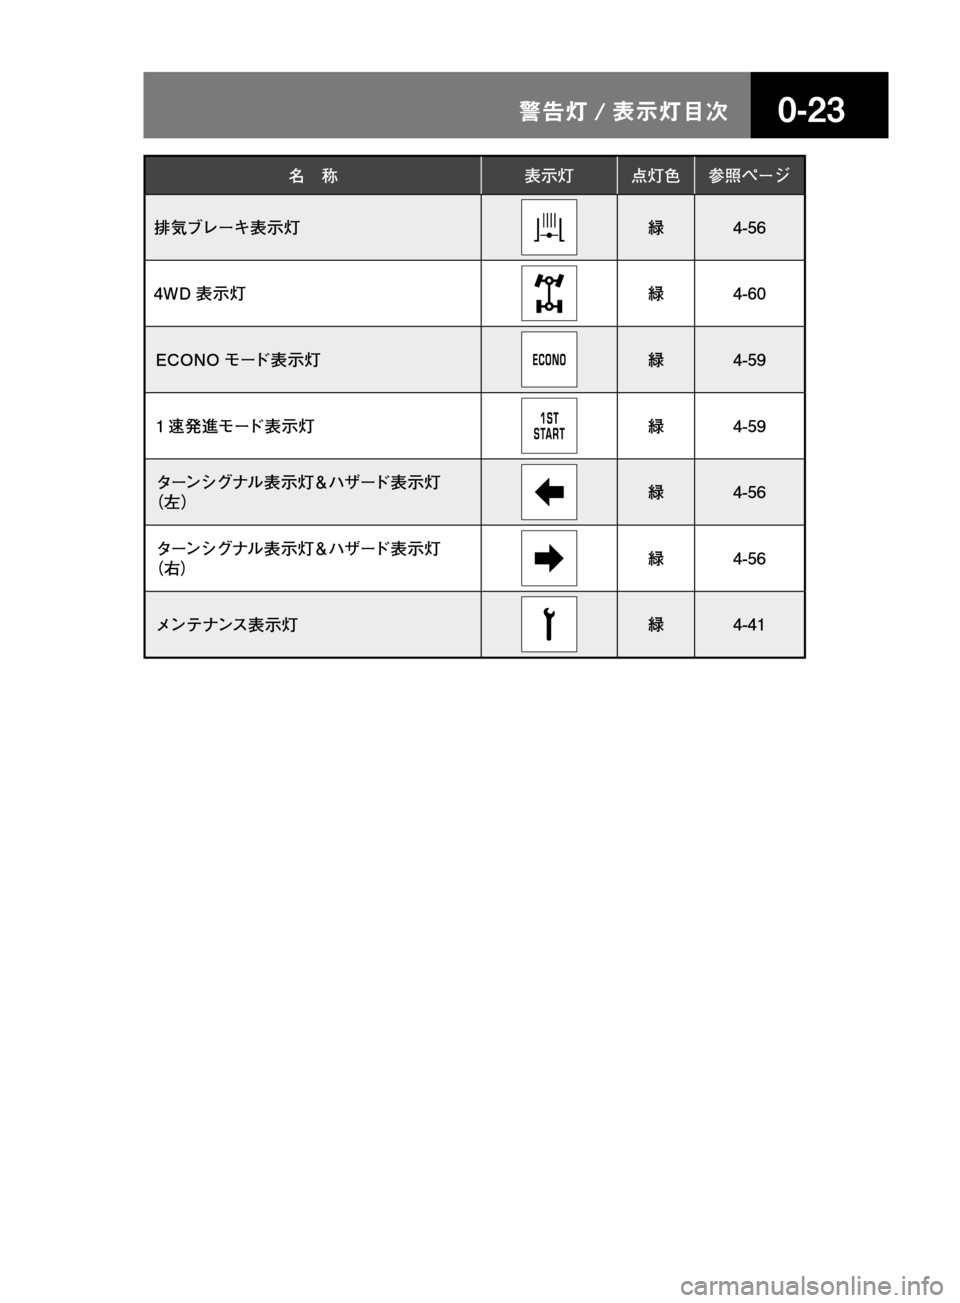 MAZDA MODEL TITAN 2013  タイタン｜取扱説明書 (in Japanese) ����/n � 
